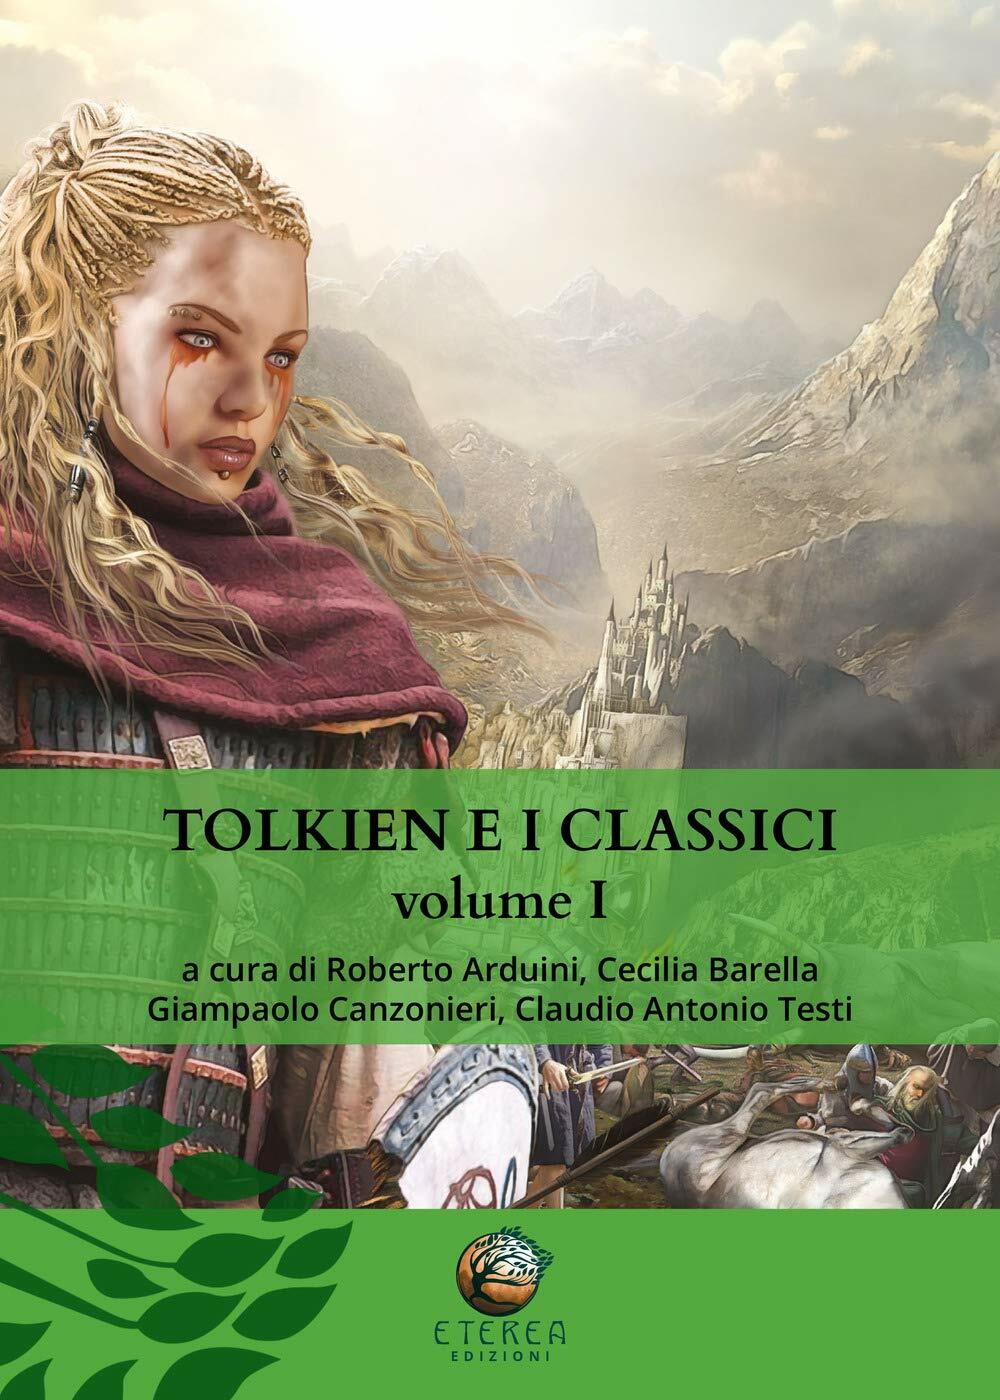 Tolkien e i classici: 1